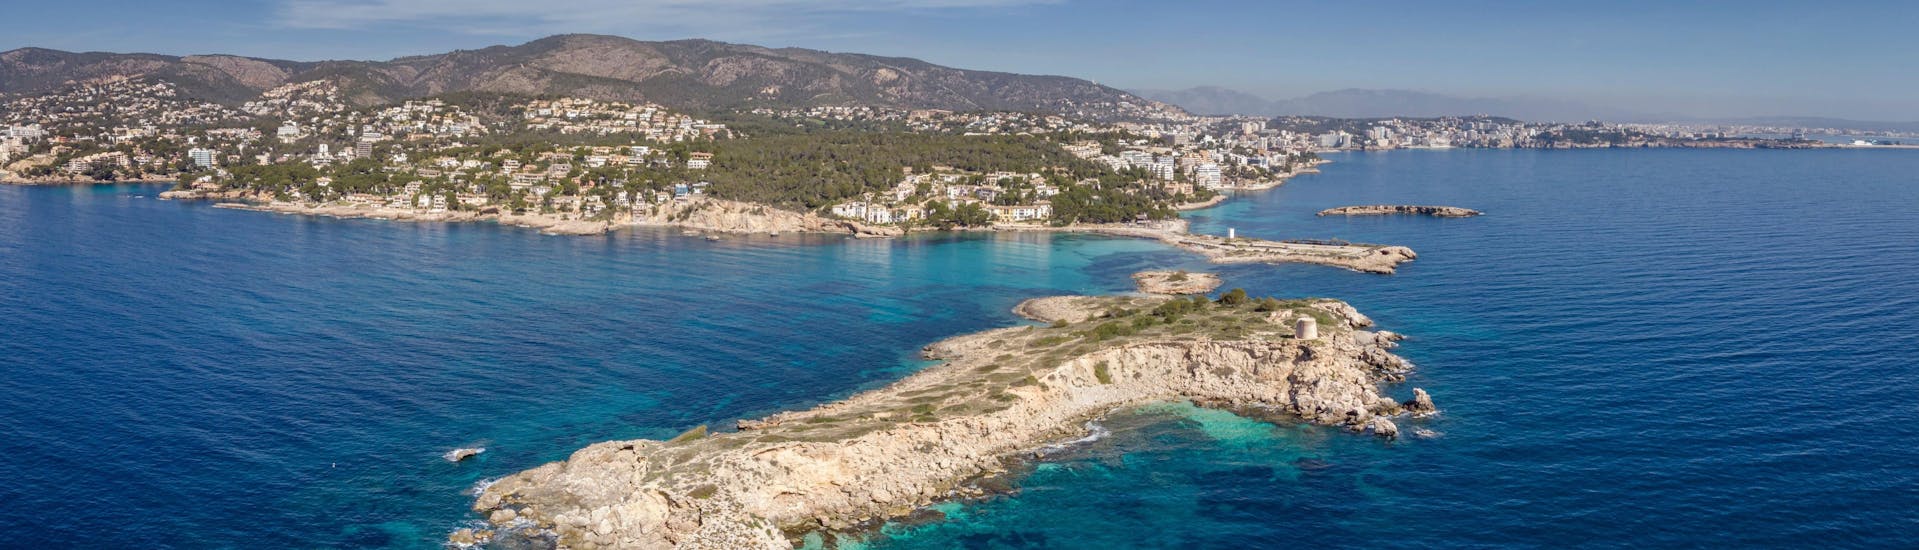 Vista de la playa de Illetes, Calvià, Mallorca, un destino popular para las excursiones en barco. 